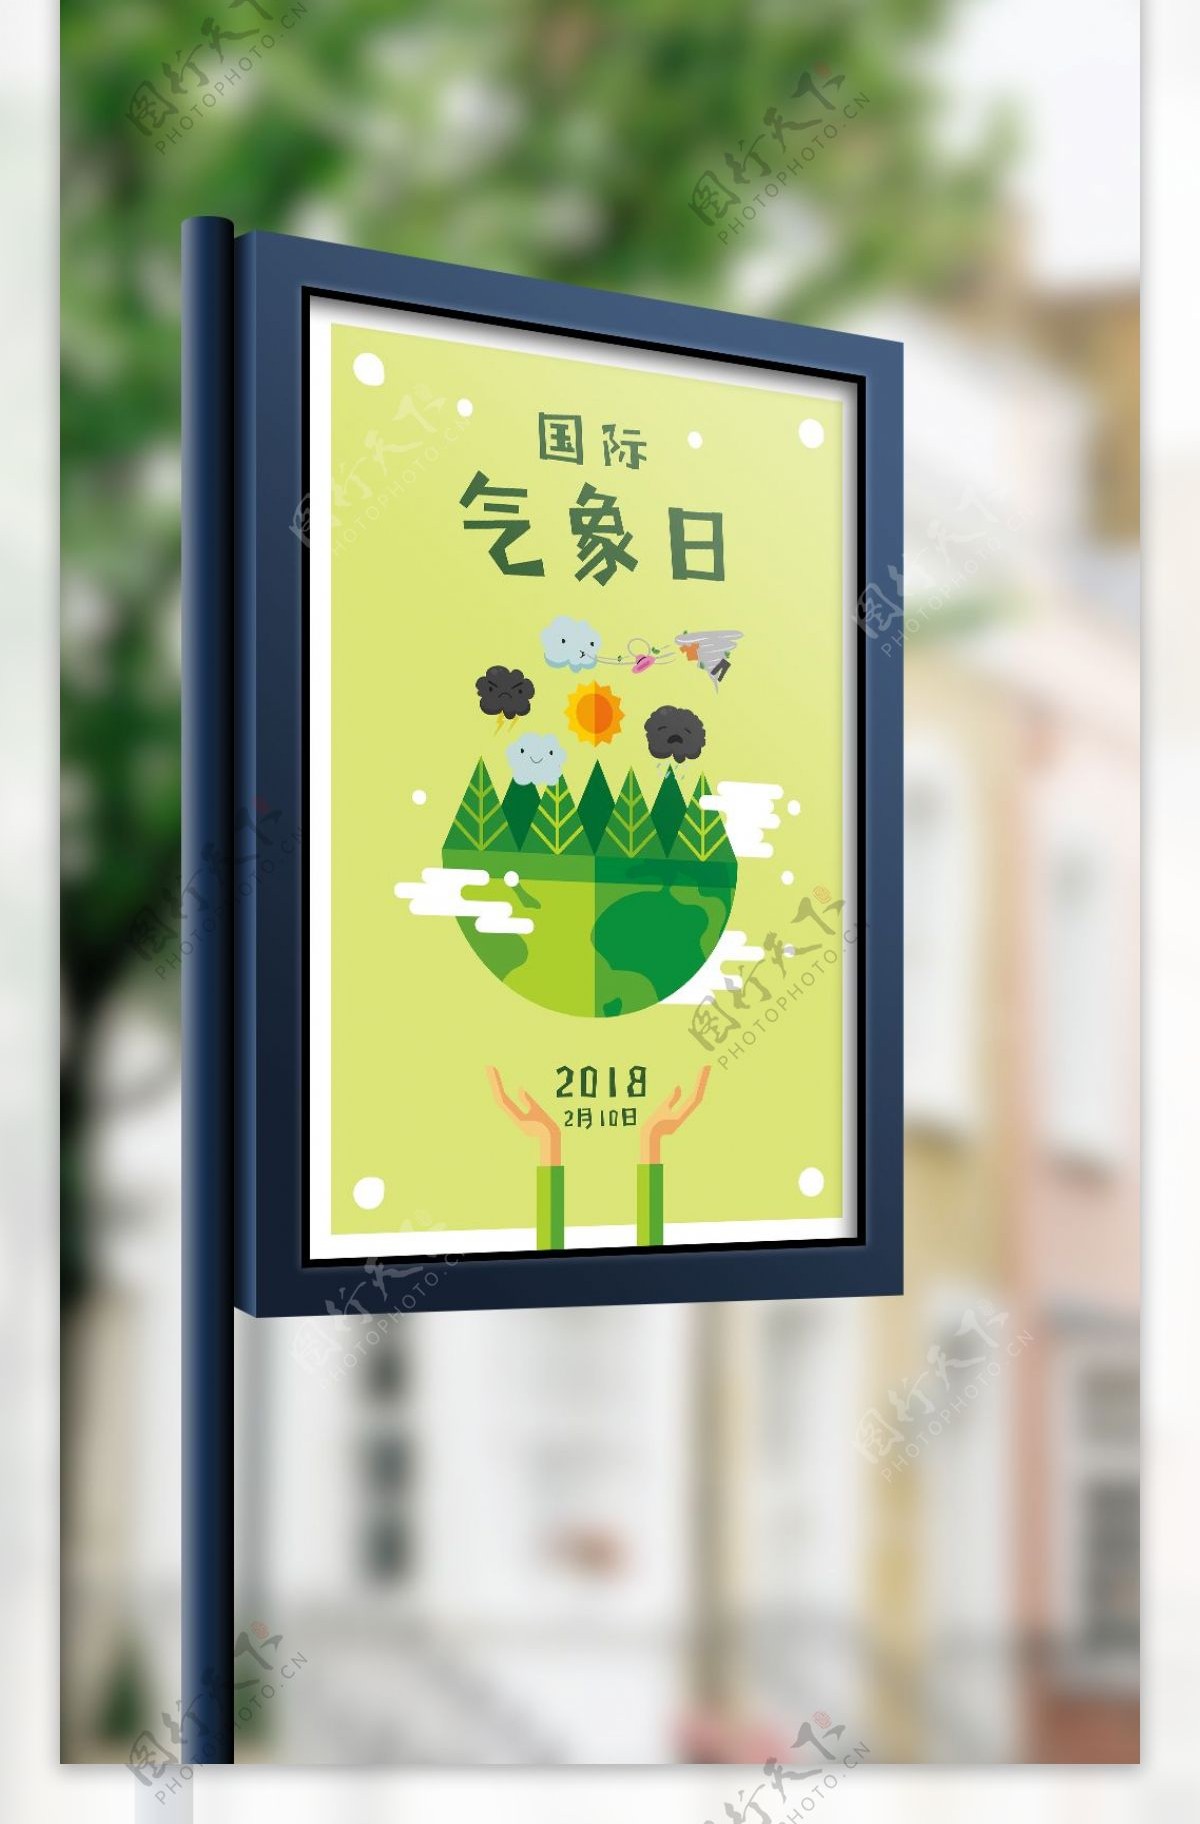 2018草绿色插画风国际气象日海报模板